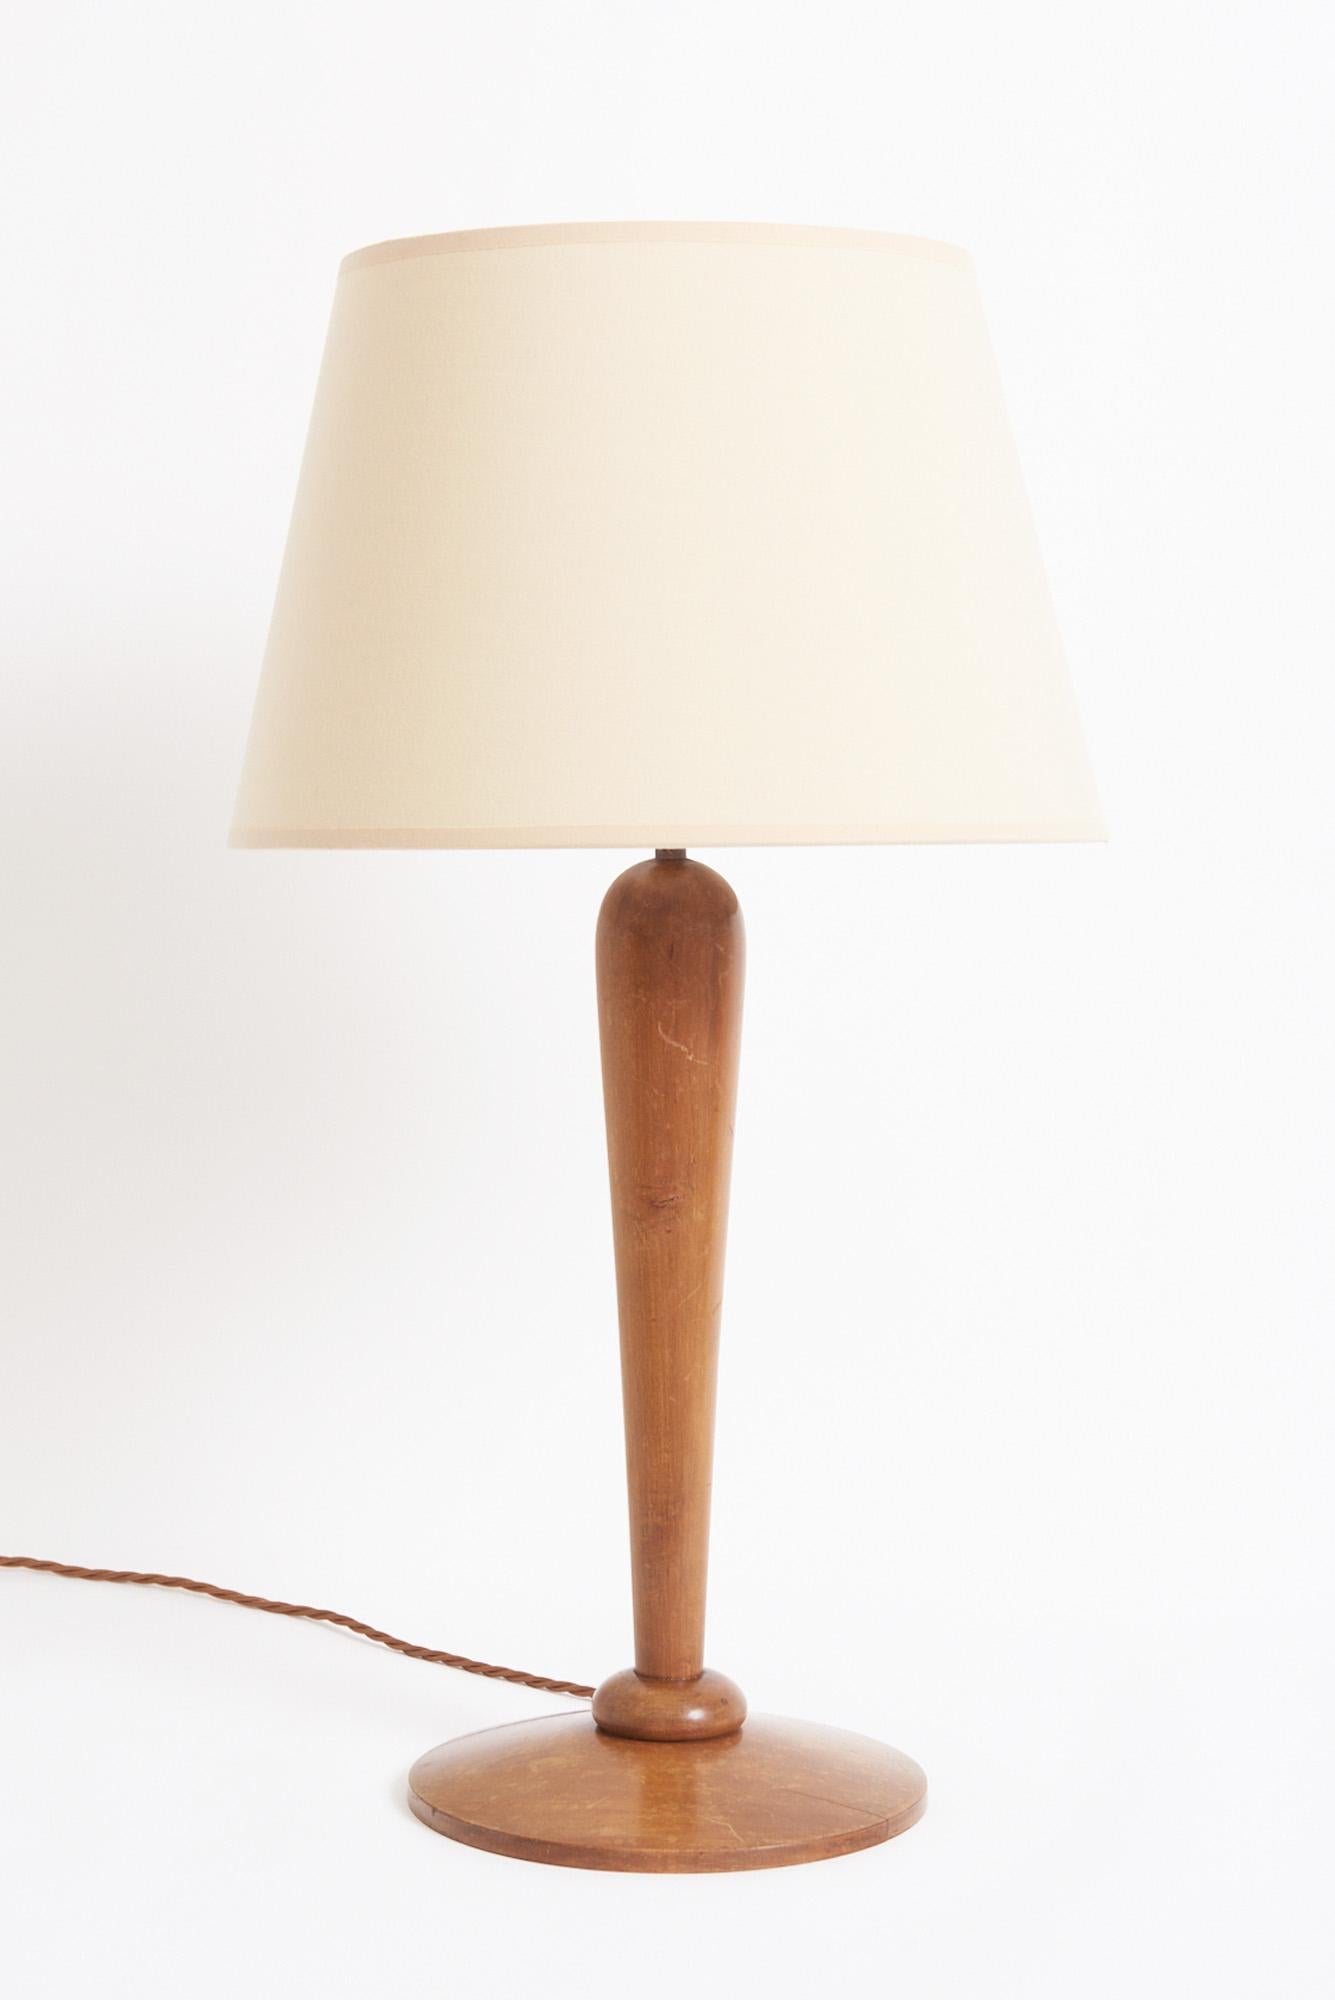 Lampe de table en frêne Art déco
France, années 1920
Avec l'abat-jour : 65 cm de haut par 41 cm de diamètre
Base de la lampe uniquement : 48 cm de haut par 22 cm de diamètre